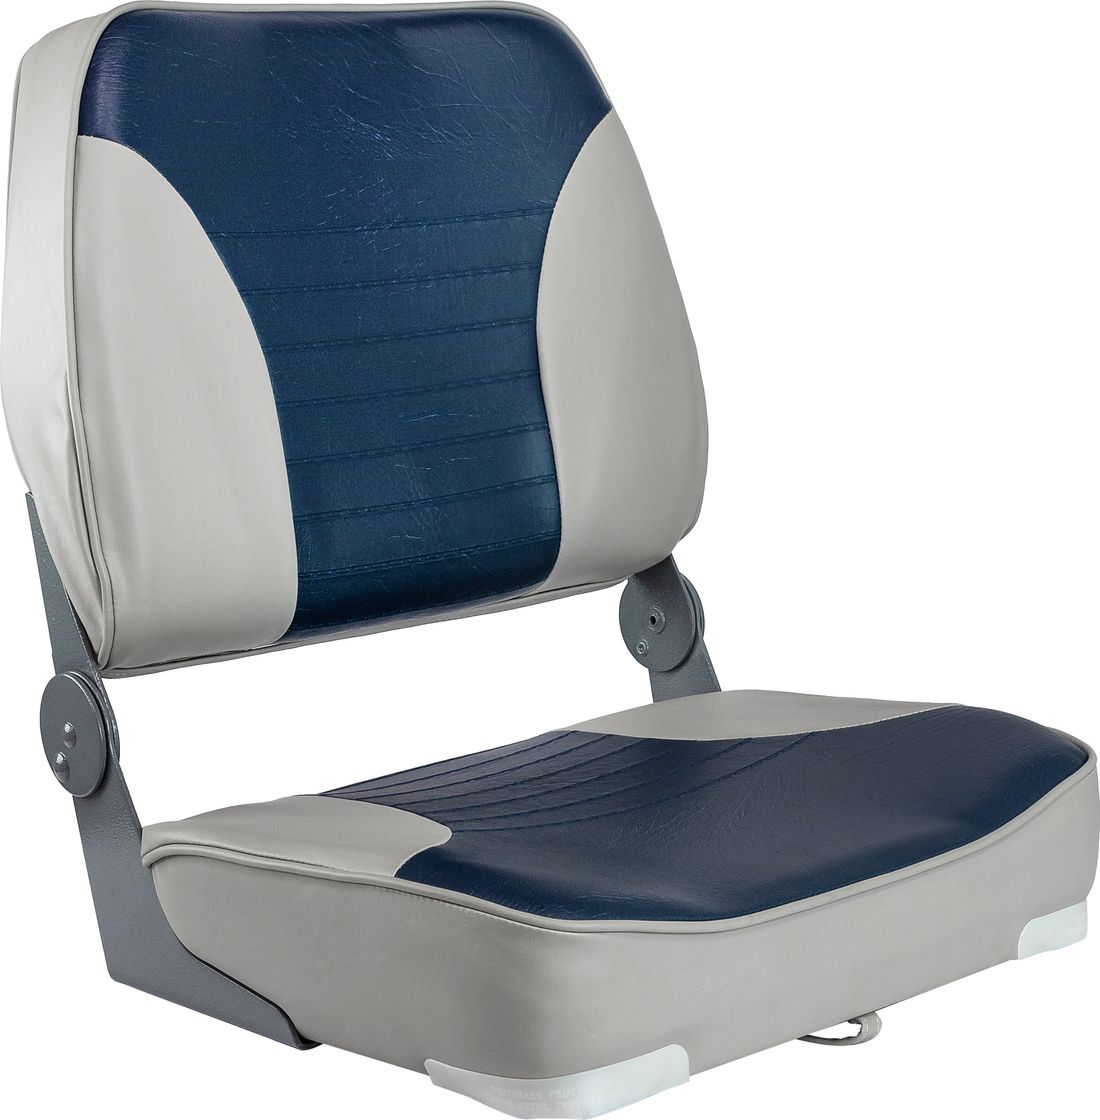 Кресло XXL складное мягкое двухцветное серый/синий 1040691 сиденье мягкое bass boat seat серый синий 75132gcb